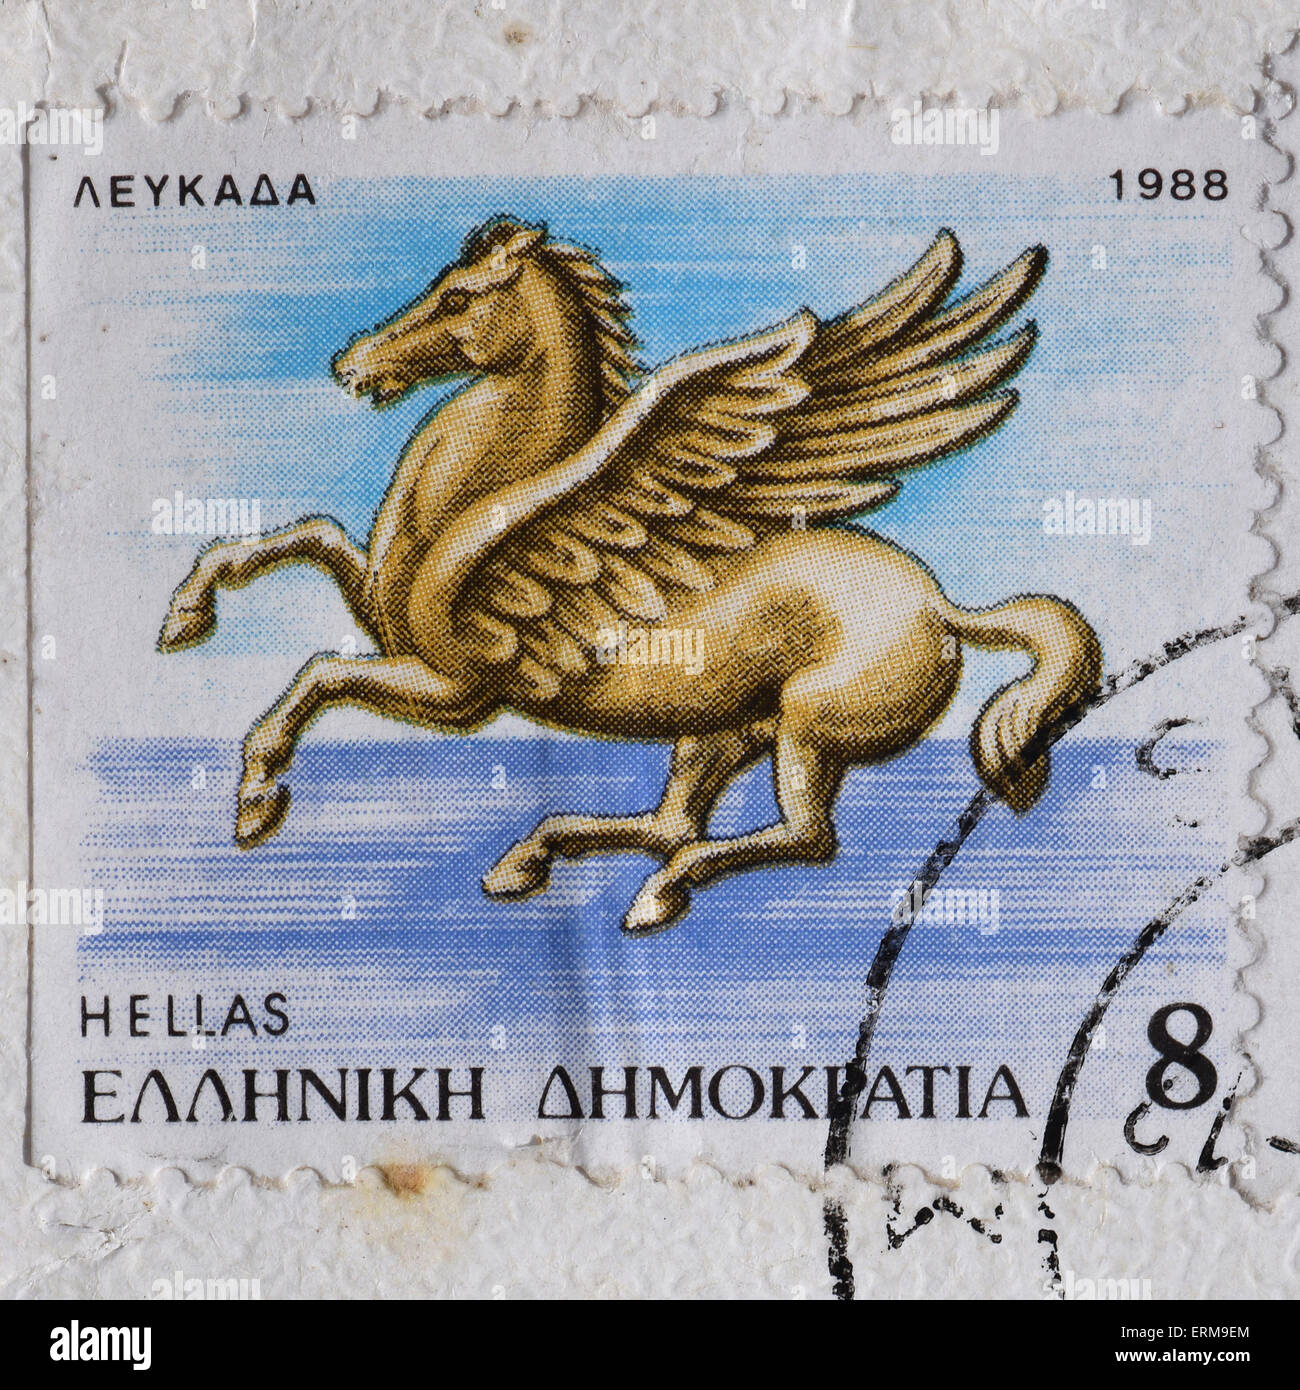 Cheval volant mythologie grecque Pegasus créature ailée vintage illustration sur timbre-poste. Banque D'Images